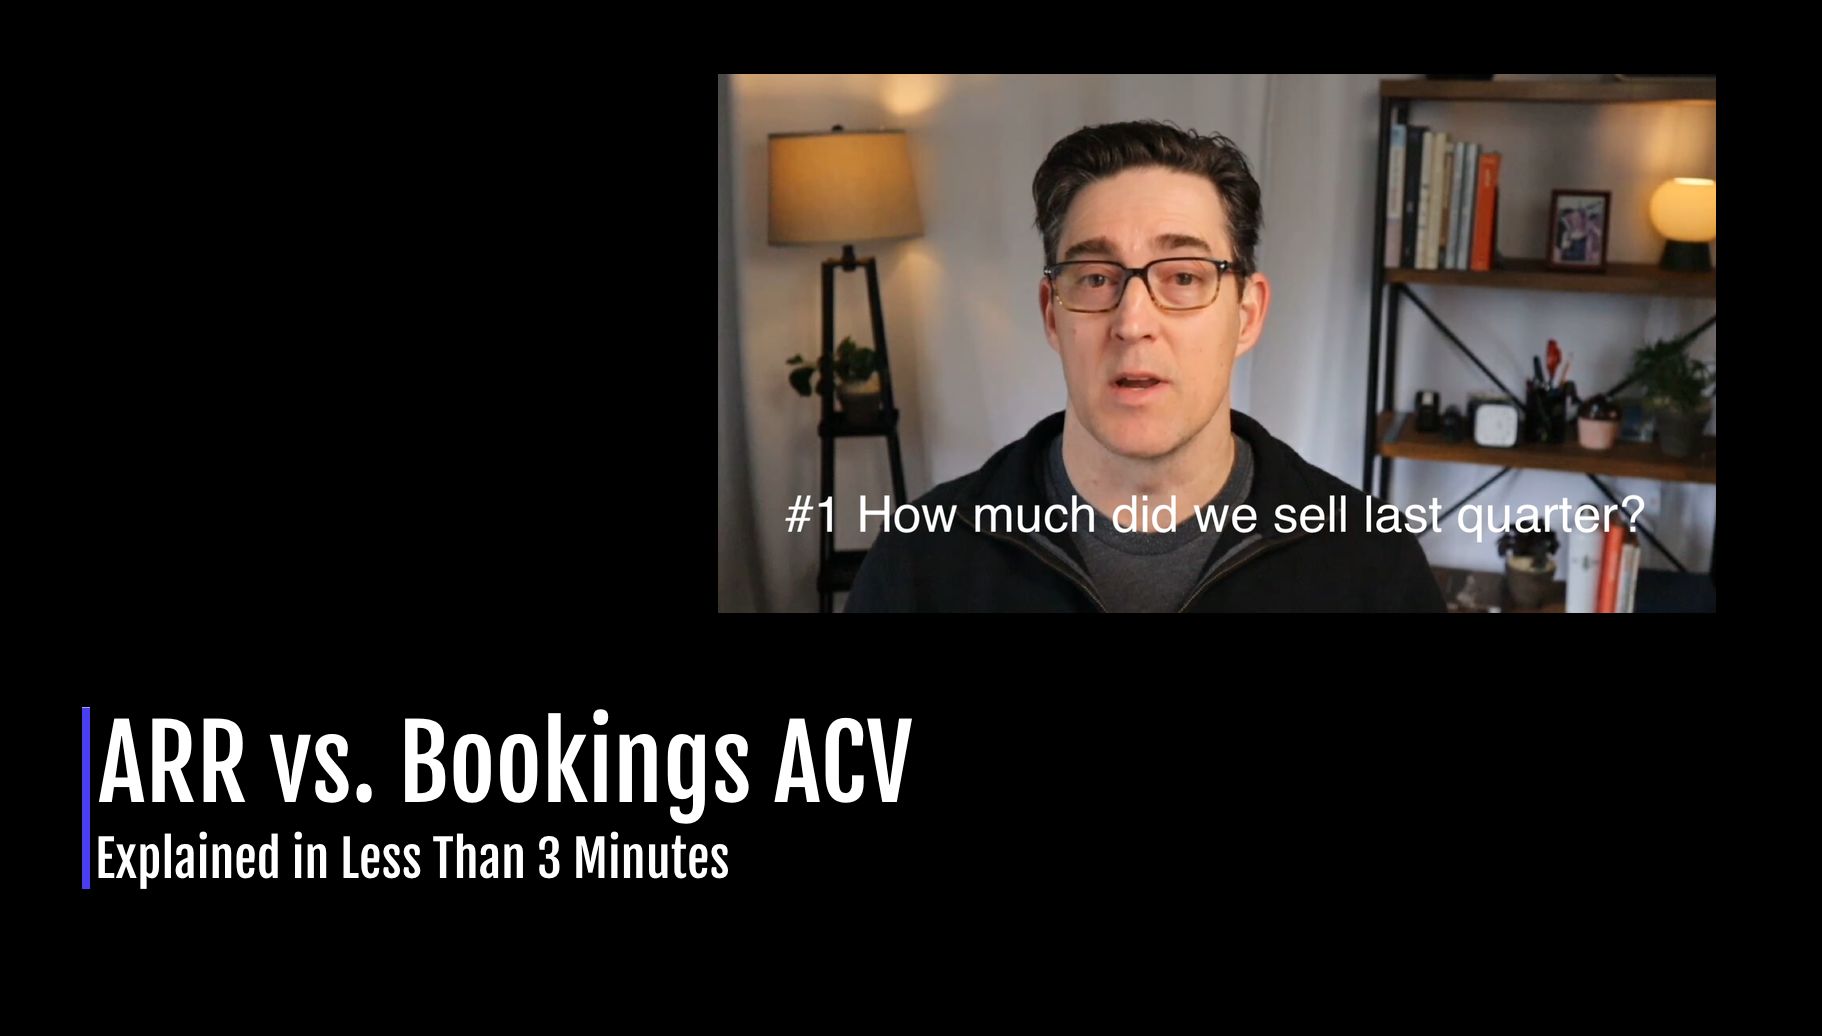 ARR vs. Bookings ACV